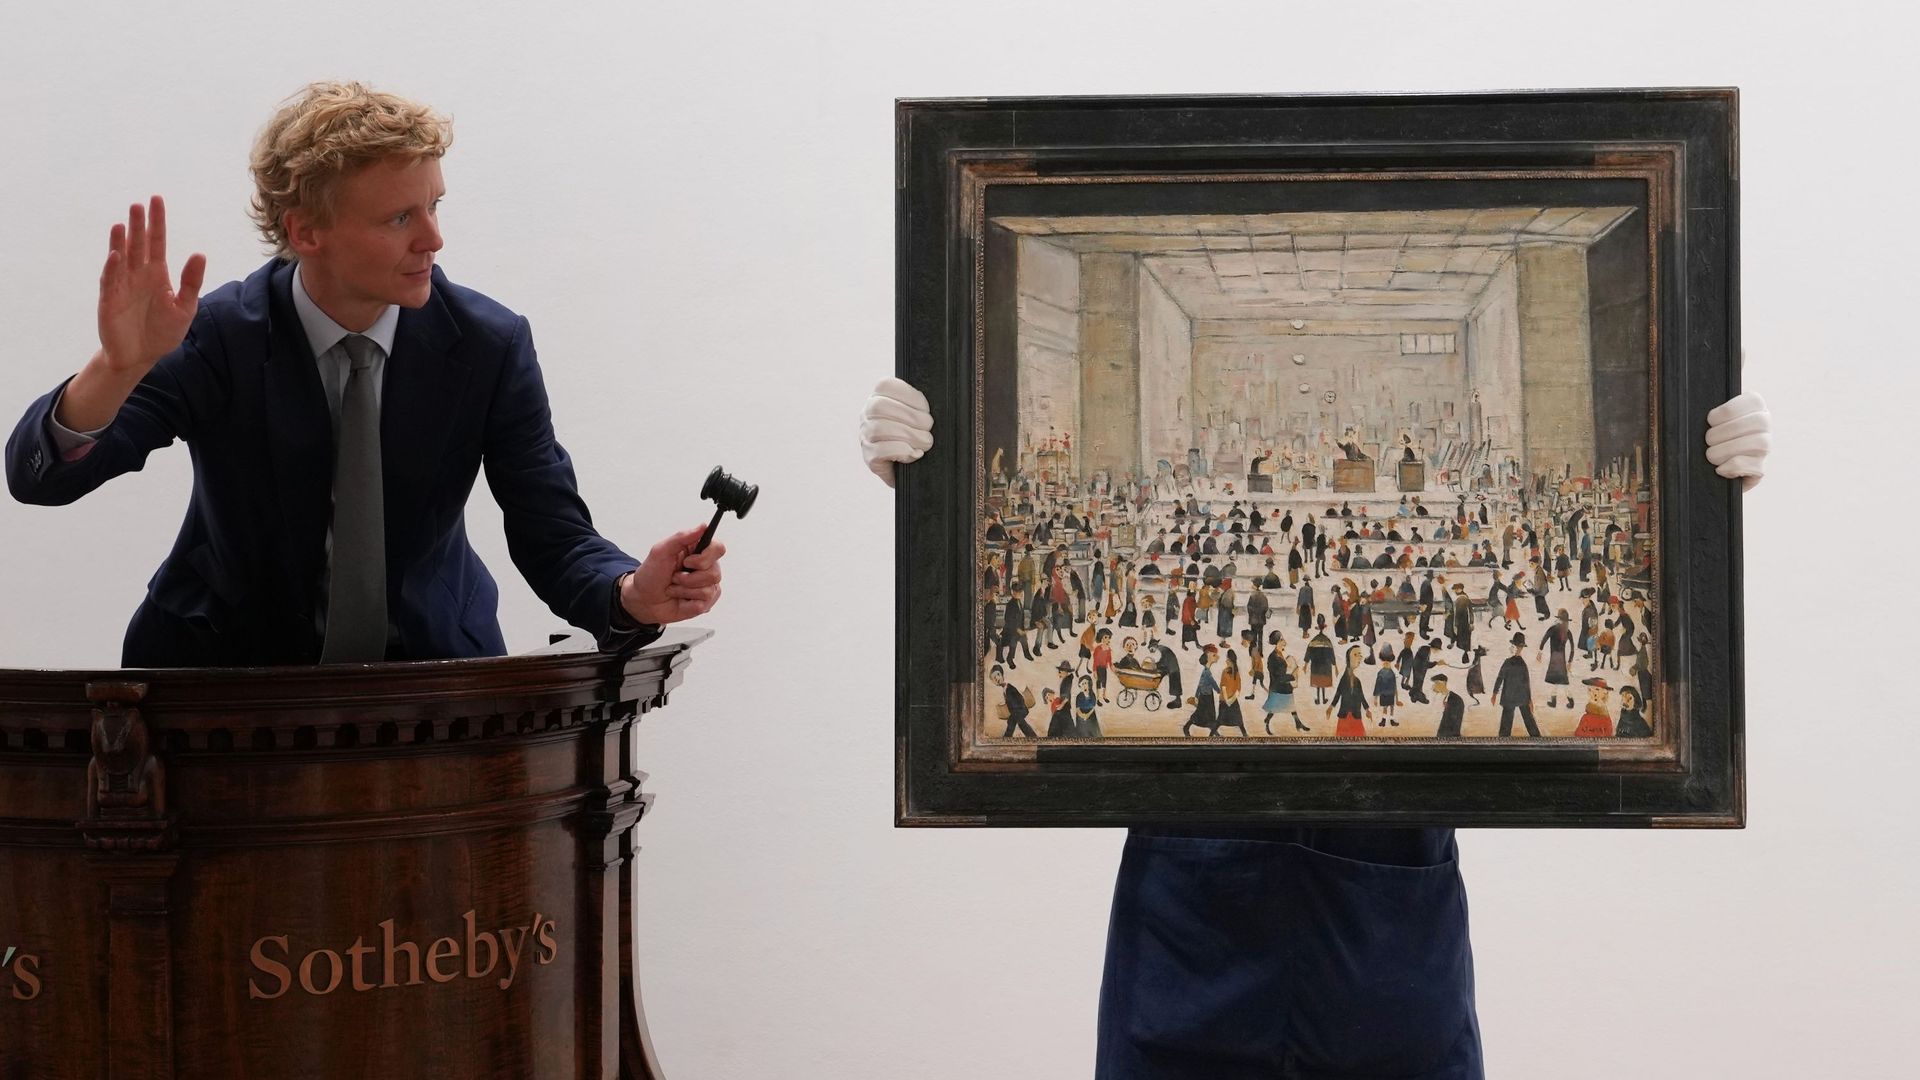 L’unique peinture de L.S Lowry représentant une scène de vente aux enchères est dévoilée avant sa propre mise aux enchères en novembre, chez Sotheby’s le 19 octobre 2021 à Londres, Angleterre.